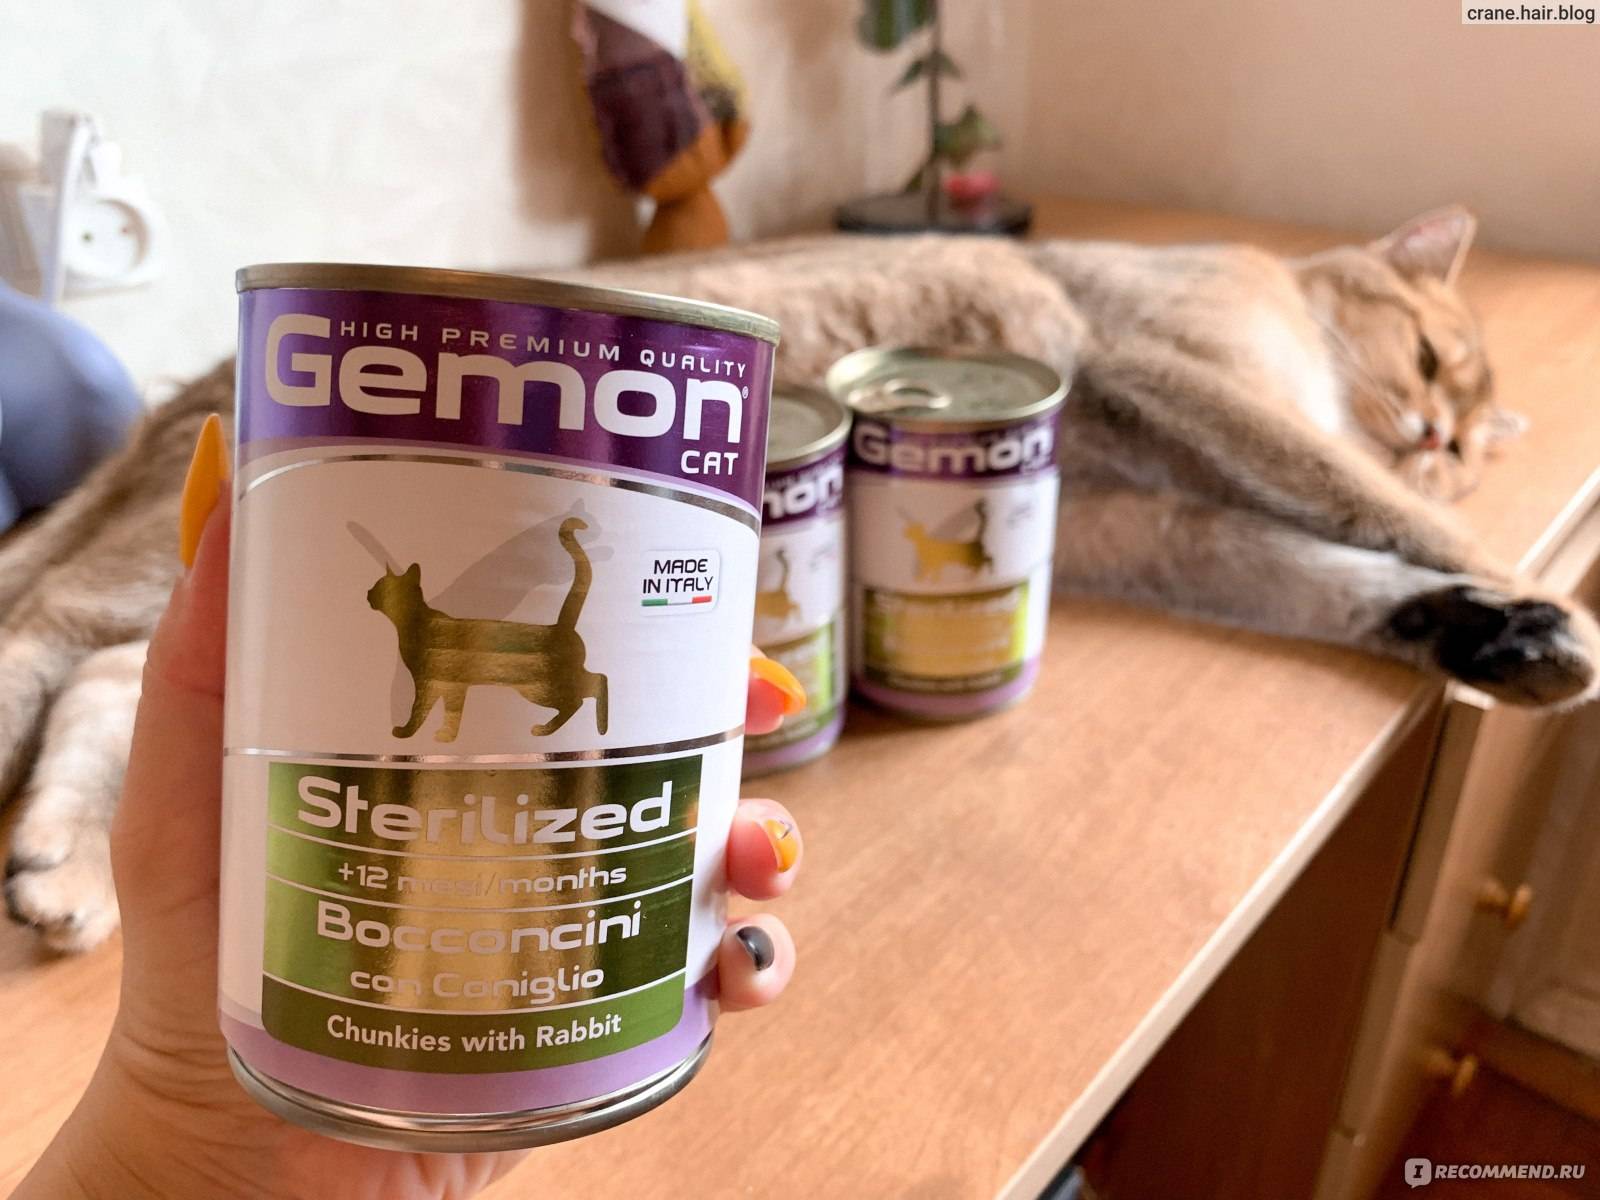 Подробная характеристика кормов gemon для кормления котенка и взрослой кошки